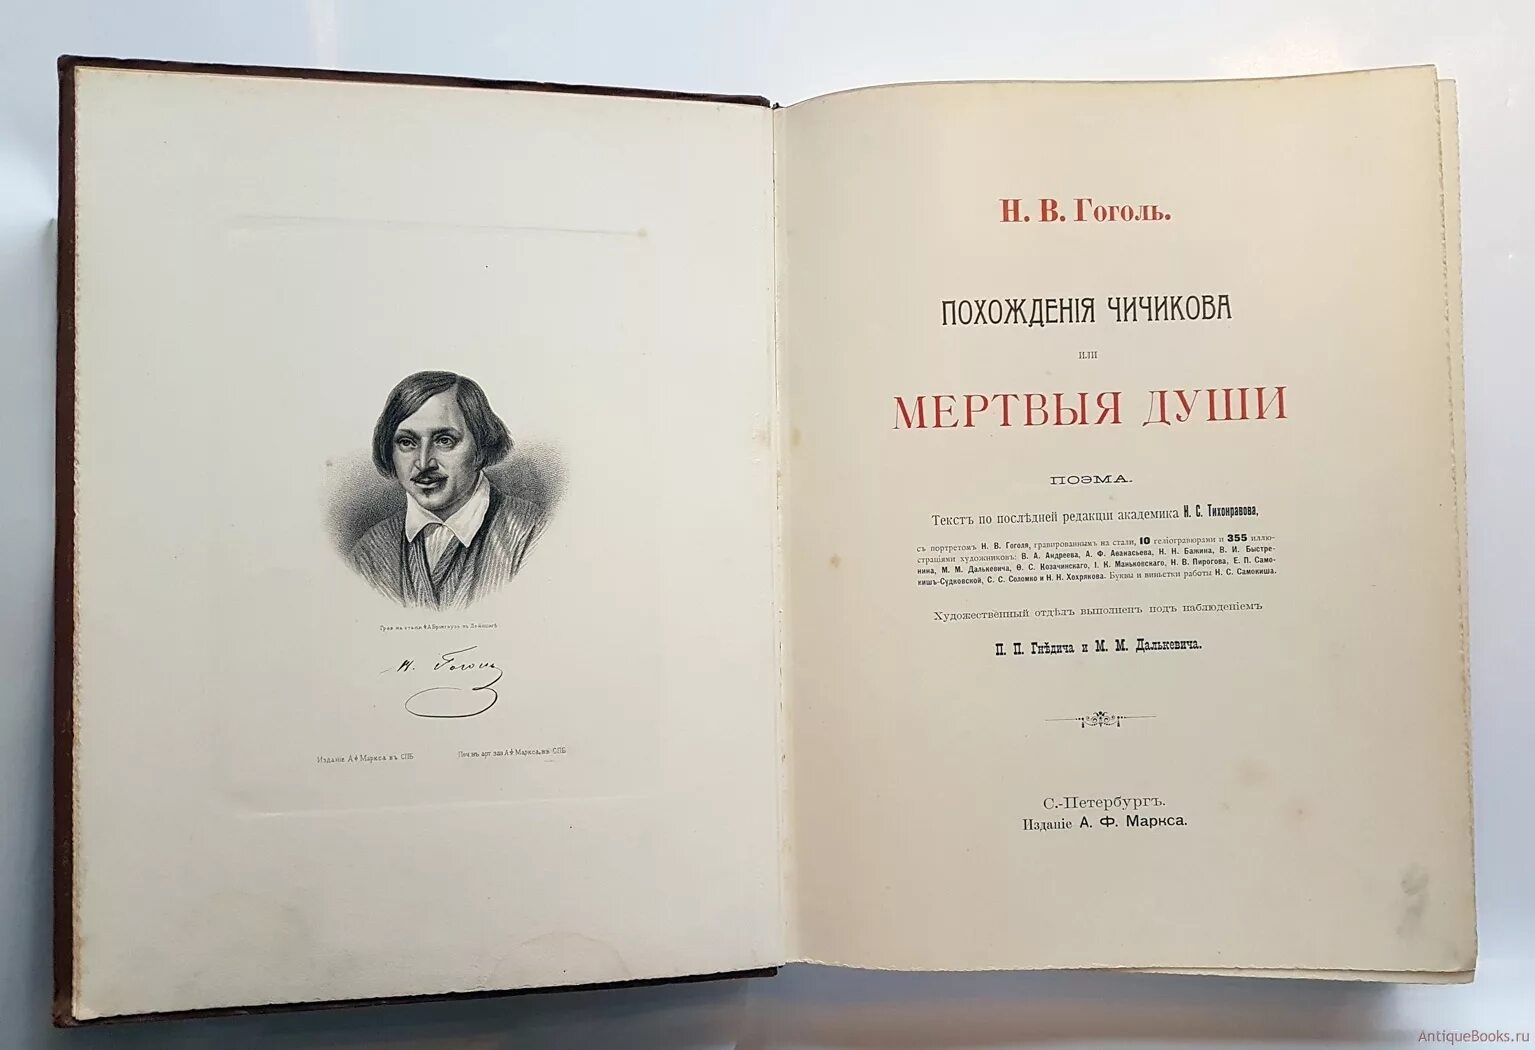 Мертвые души 3 часть. Мертвые души первое издание 1842. Гоголь мертвые души первое издание. 1842 Вышла в свет поэма Николая Гоголя «мёртвые души».